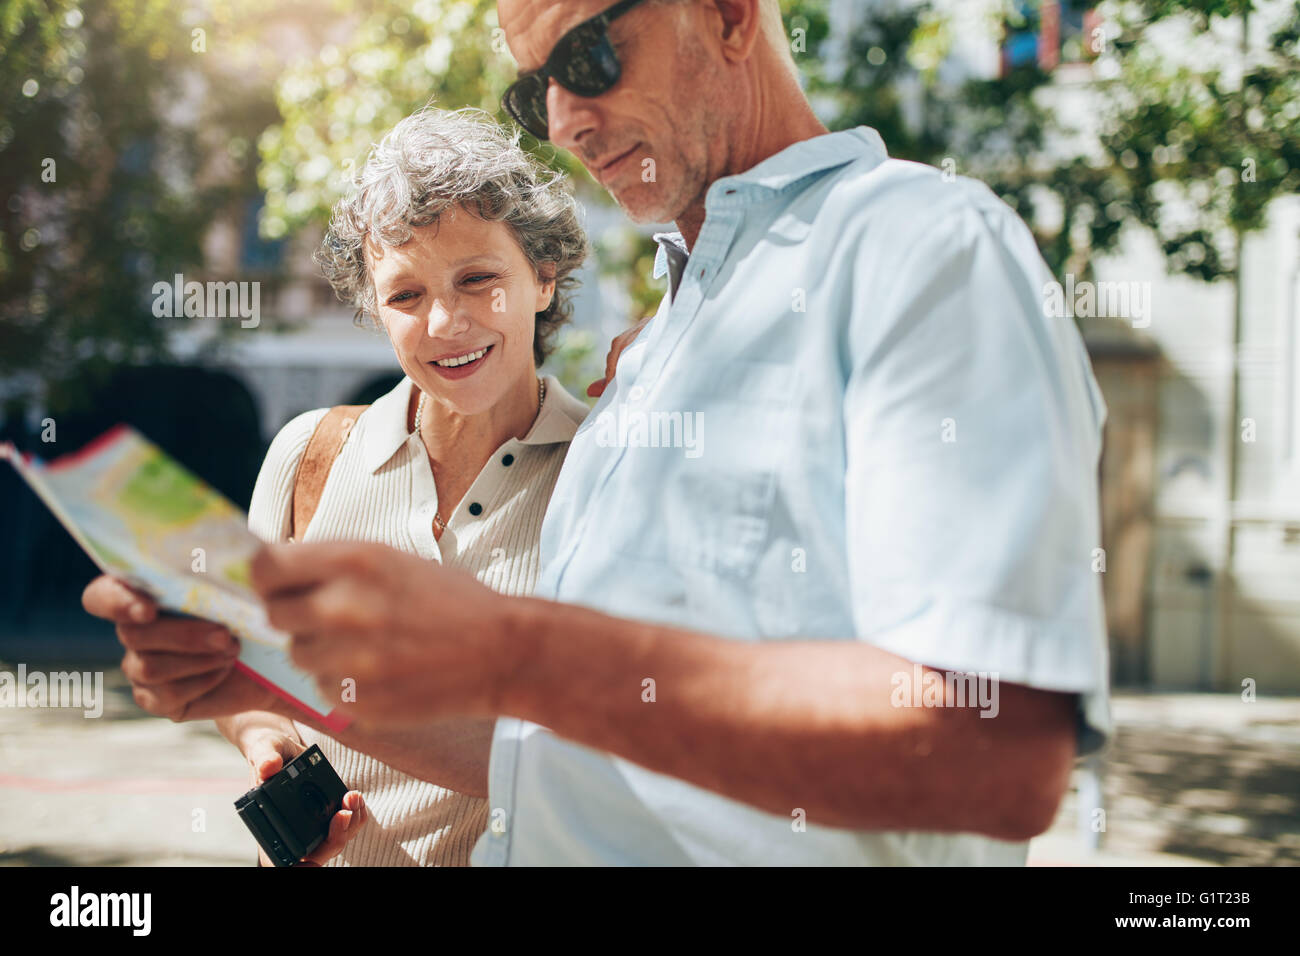 Schuss von aktiven Senior im Urlaub einen Stadtplan lesen hautnah. Reifer Mann und Frau mit Stadtplan nach dem Weg in die Stadt. Stockfoto